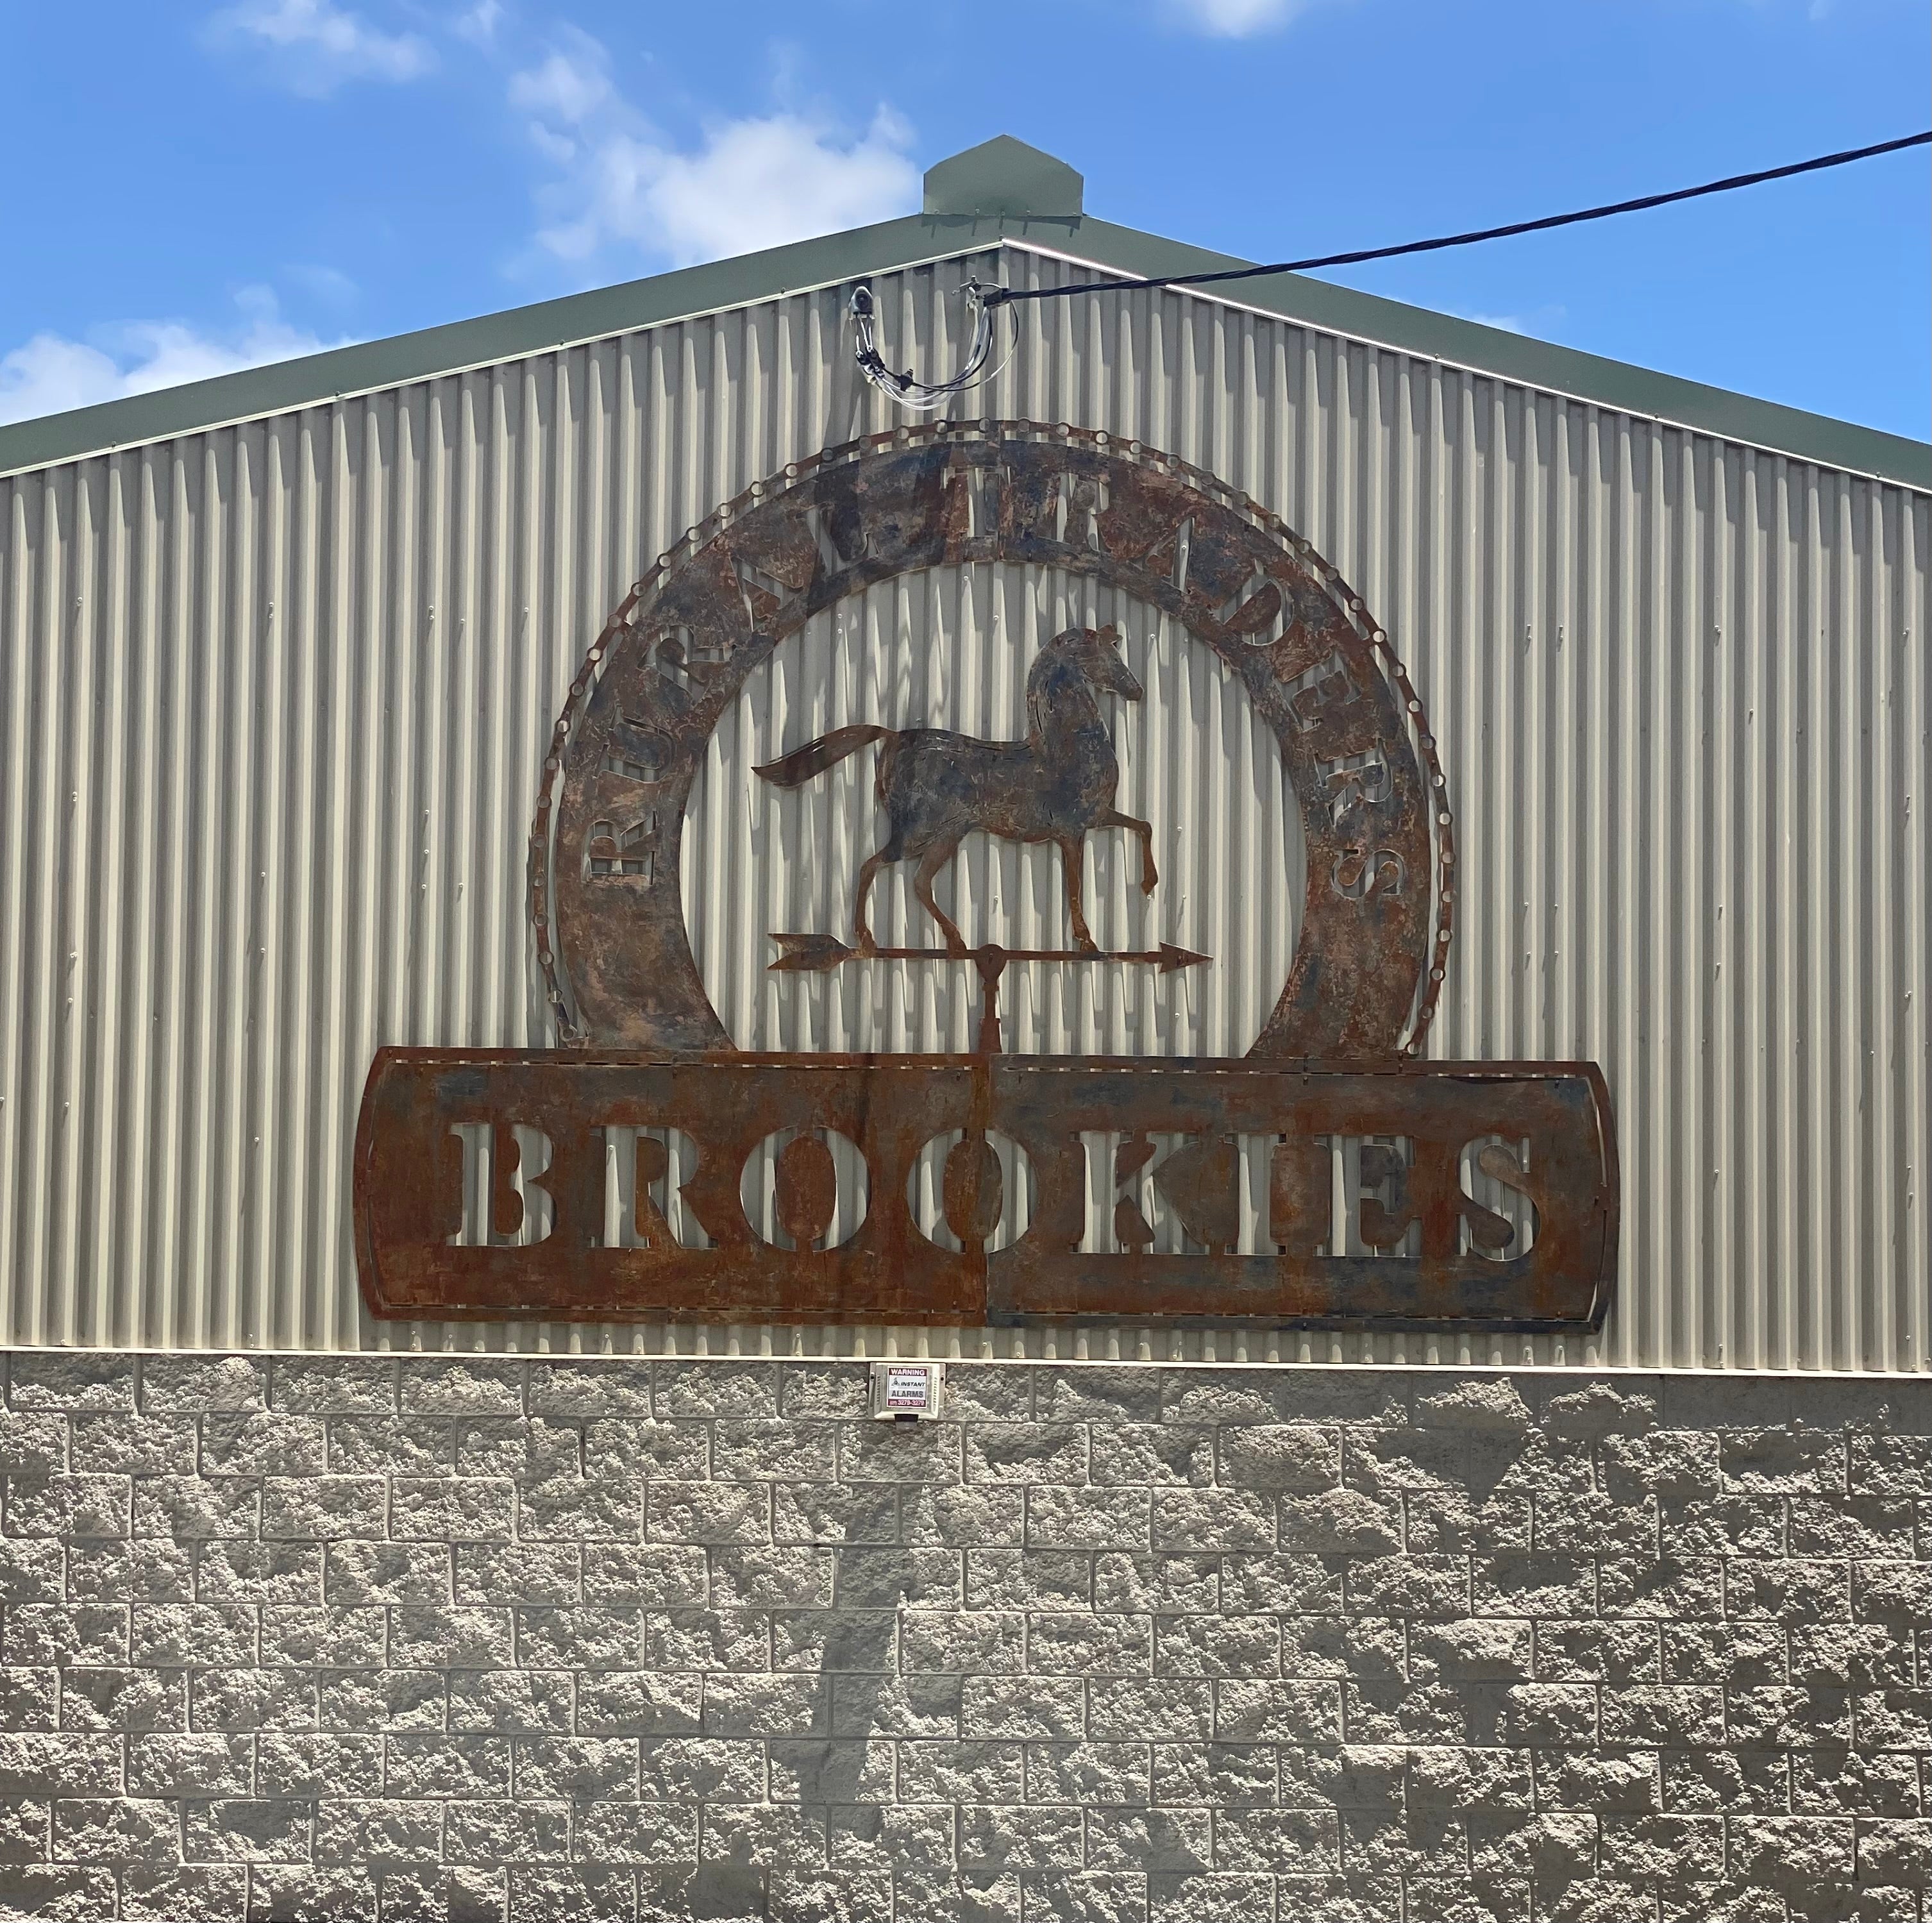 Brookies Rural Traders